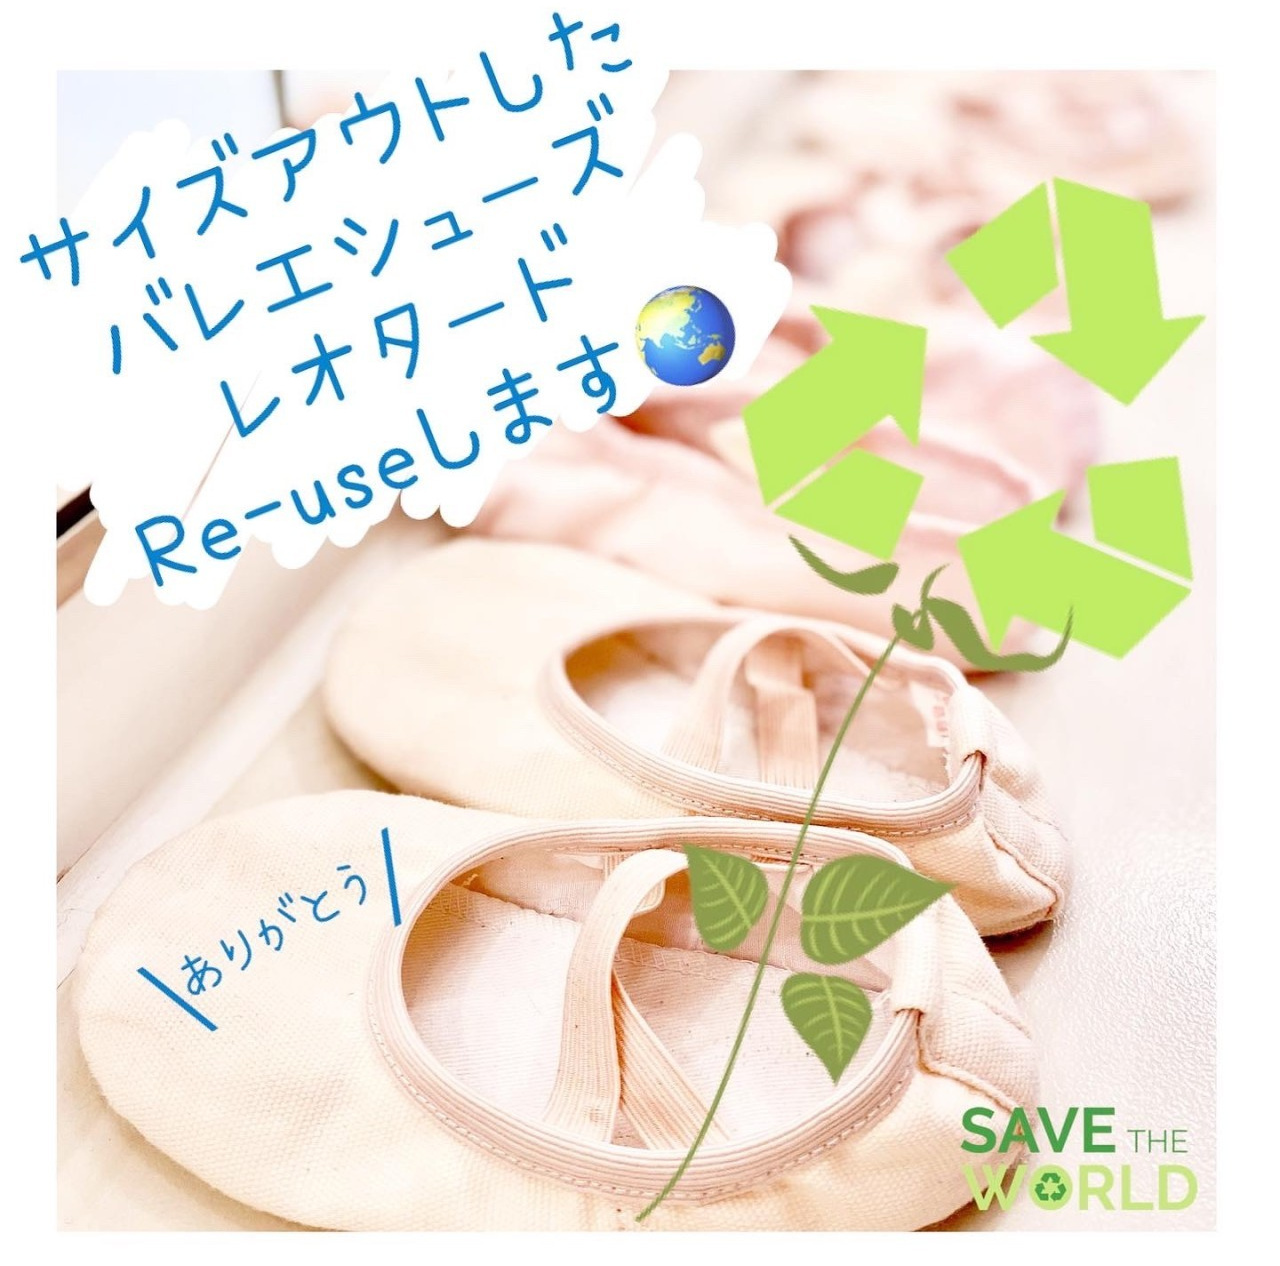 東京渋谷区バレエシューズタイツのリサイクル運動